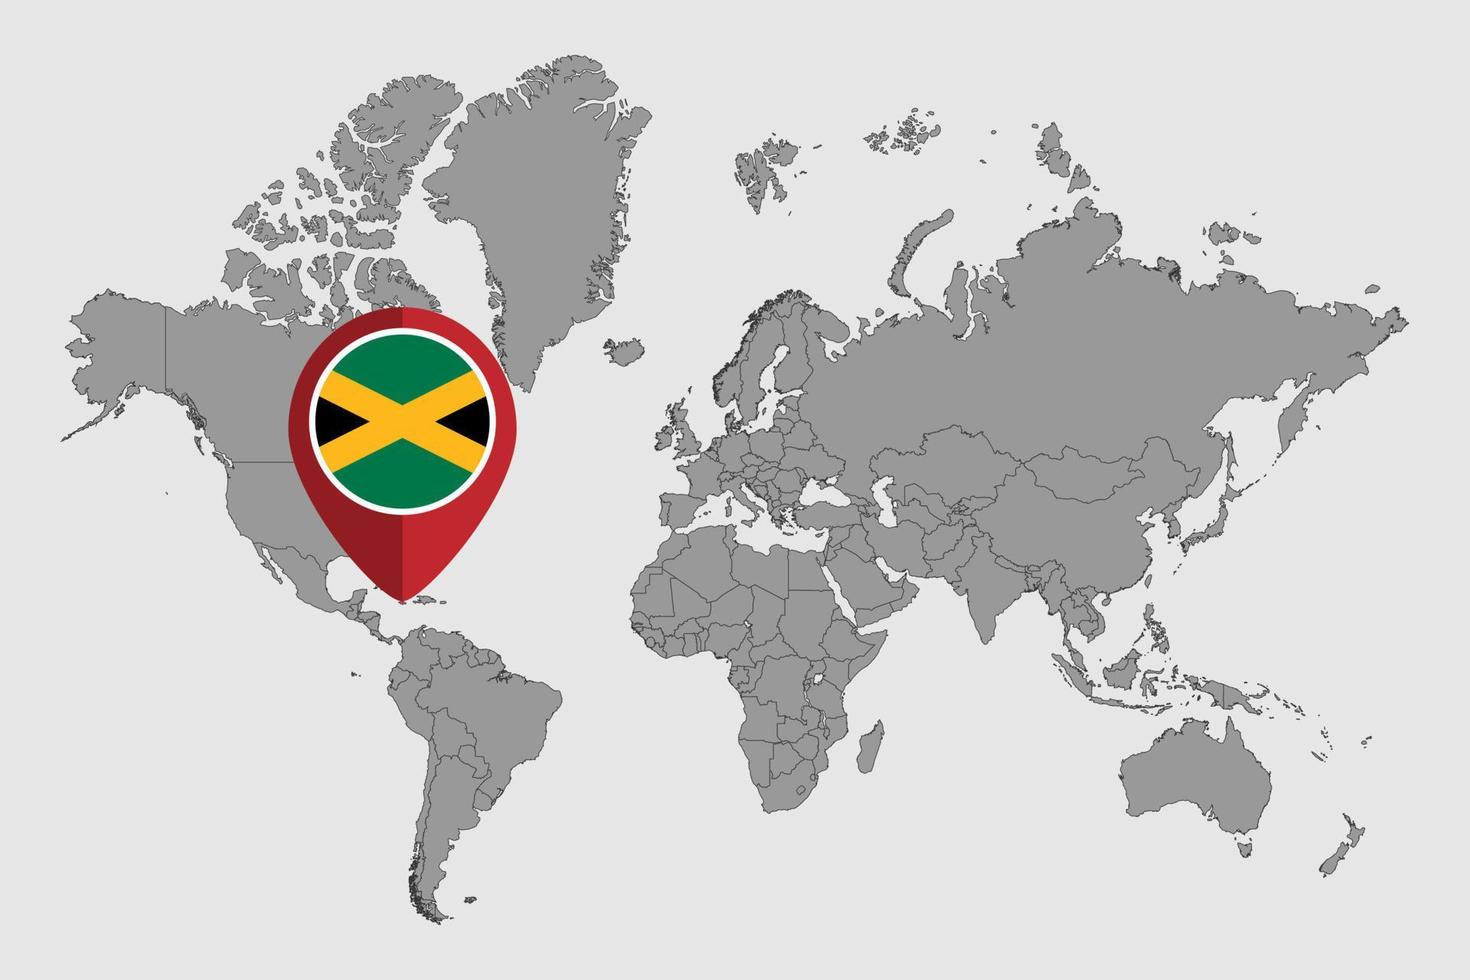 pin mapa con la bandera de jamaica en el mapa mundial. ilustración vectorial vector